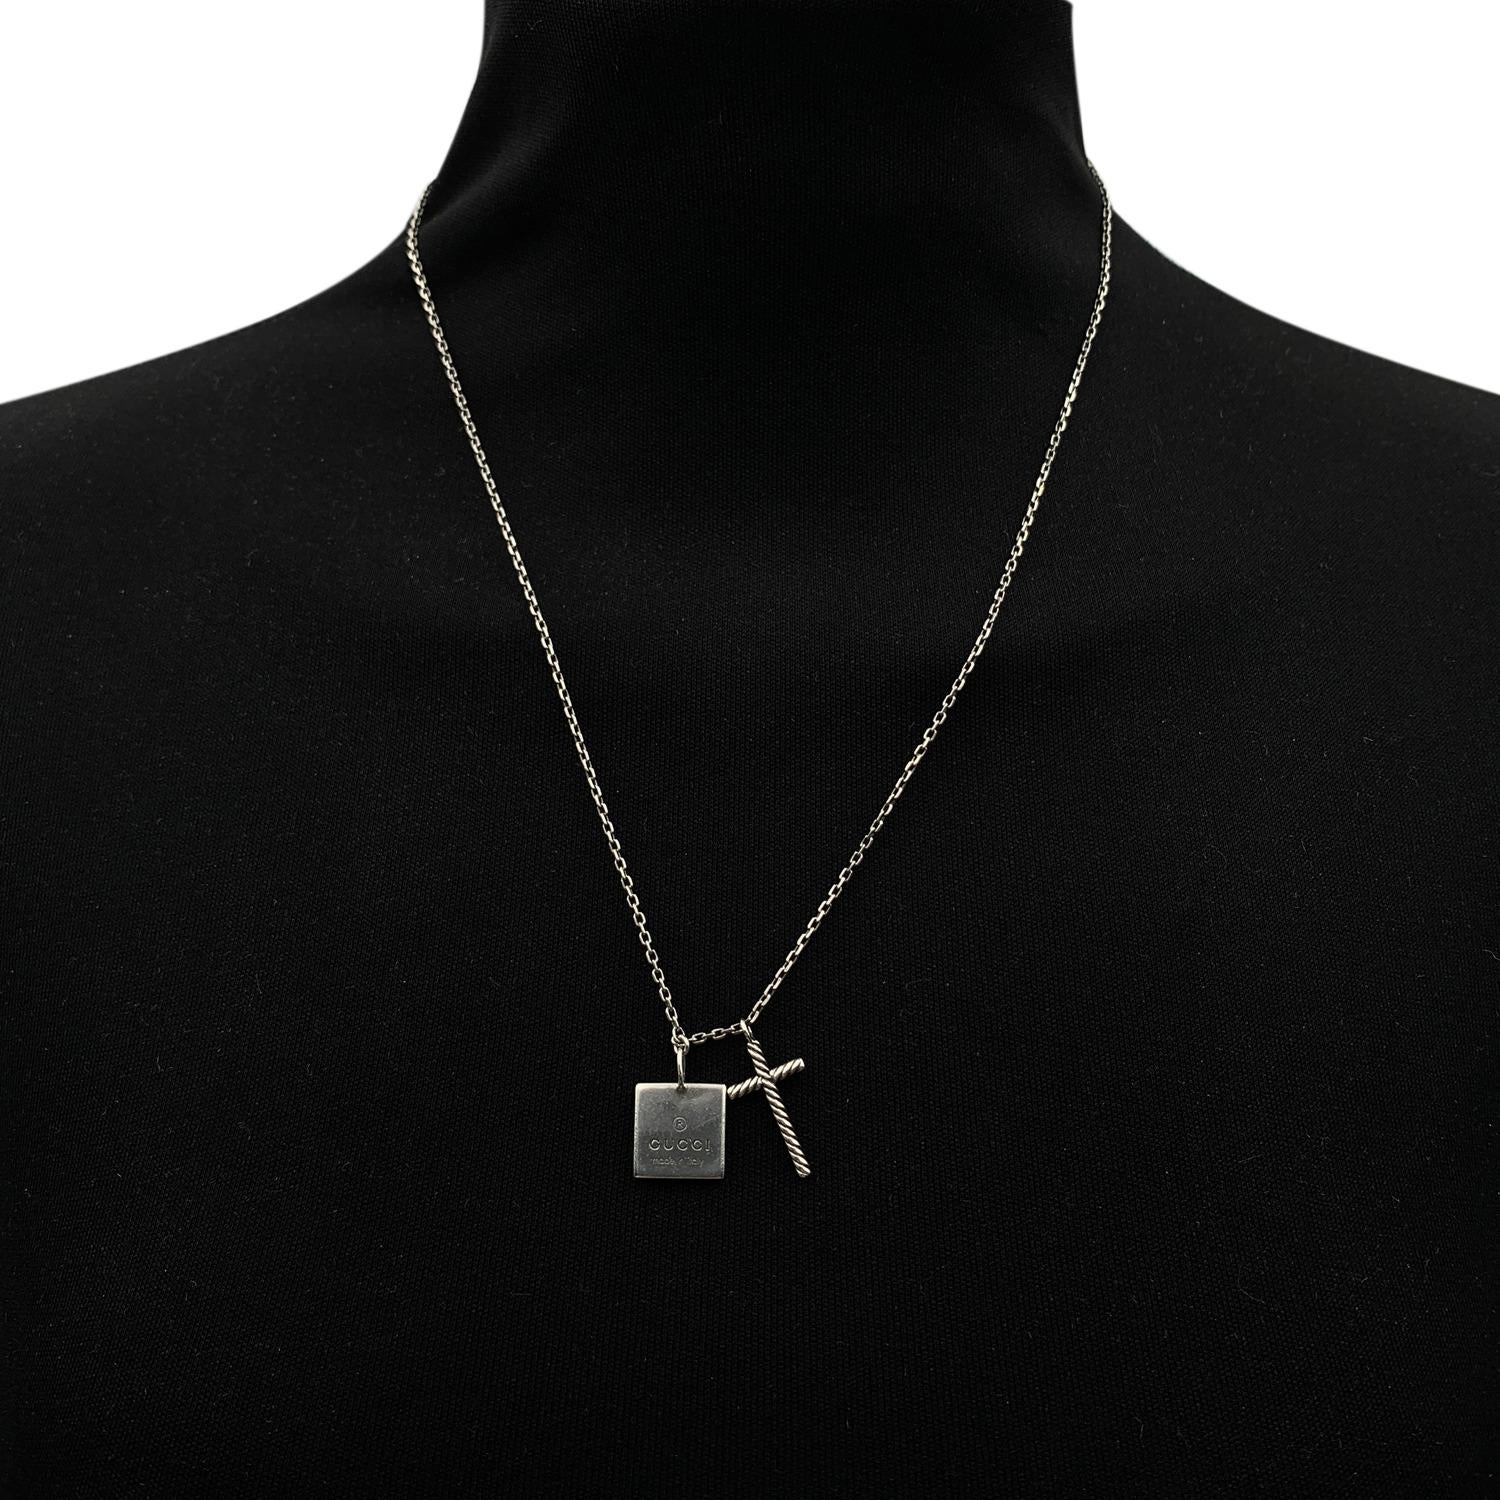 gucci square necklace